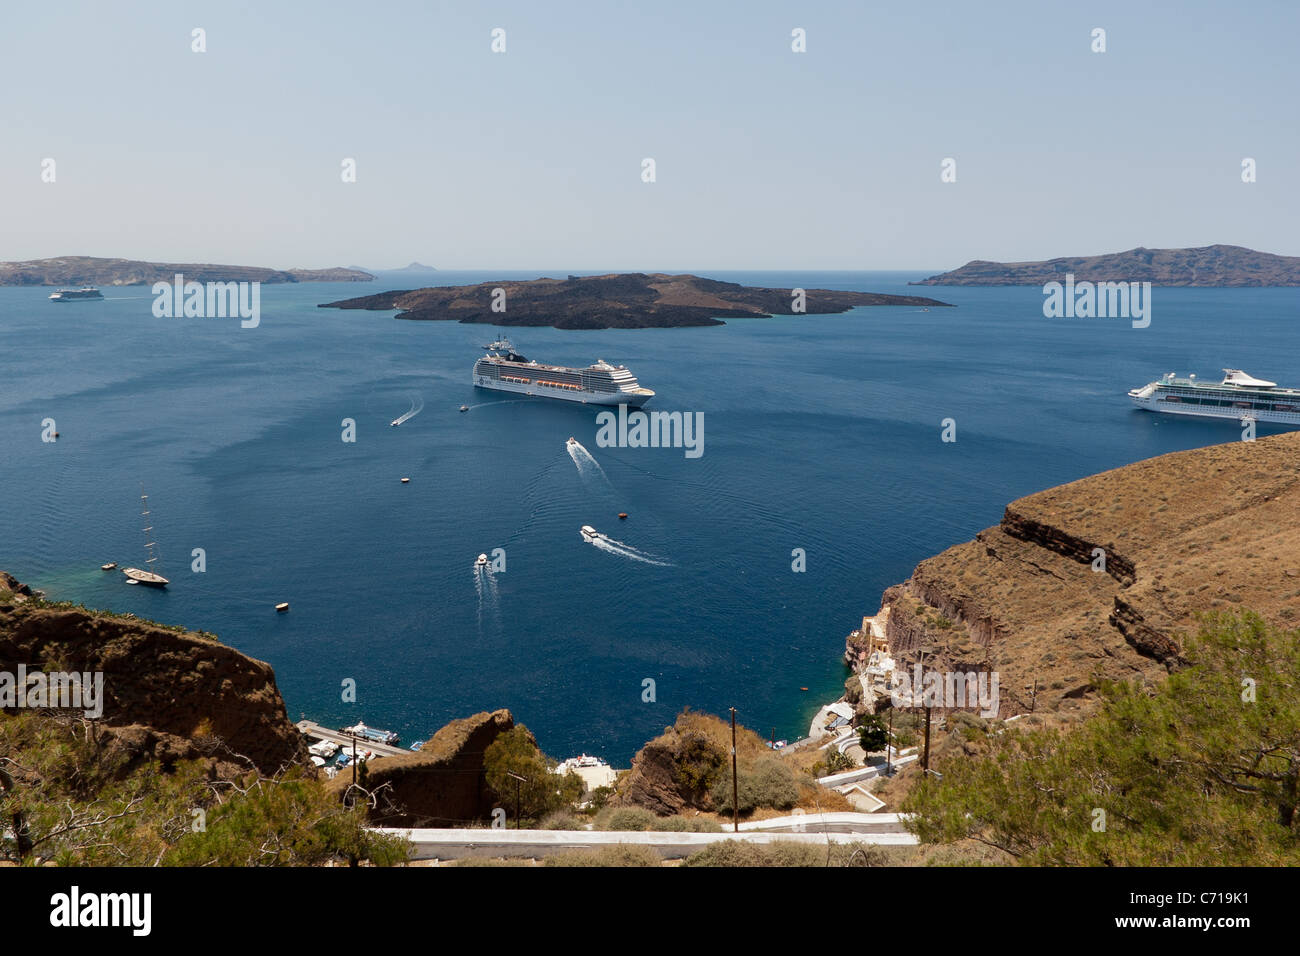 Caldeira avec bateau de croisière, Fira, Santorini, Grèce Banque D'Images